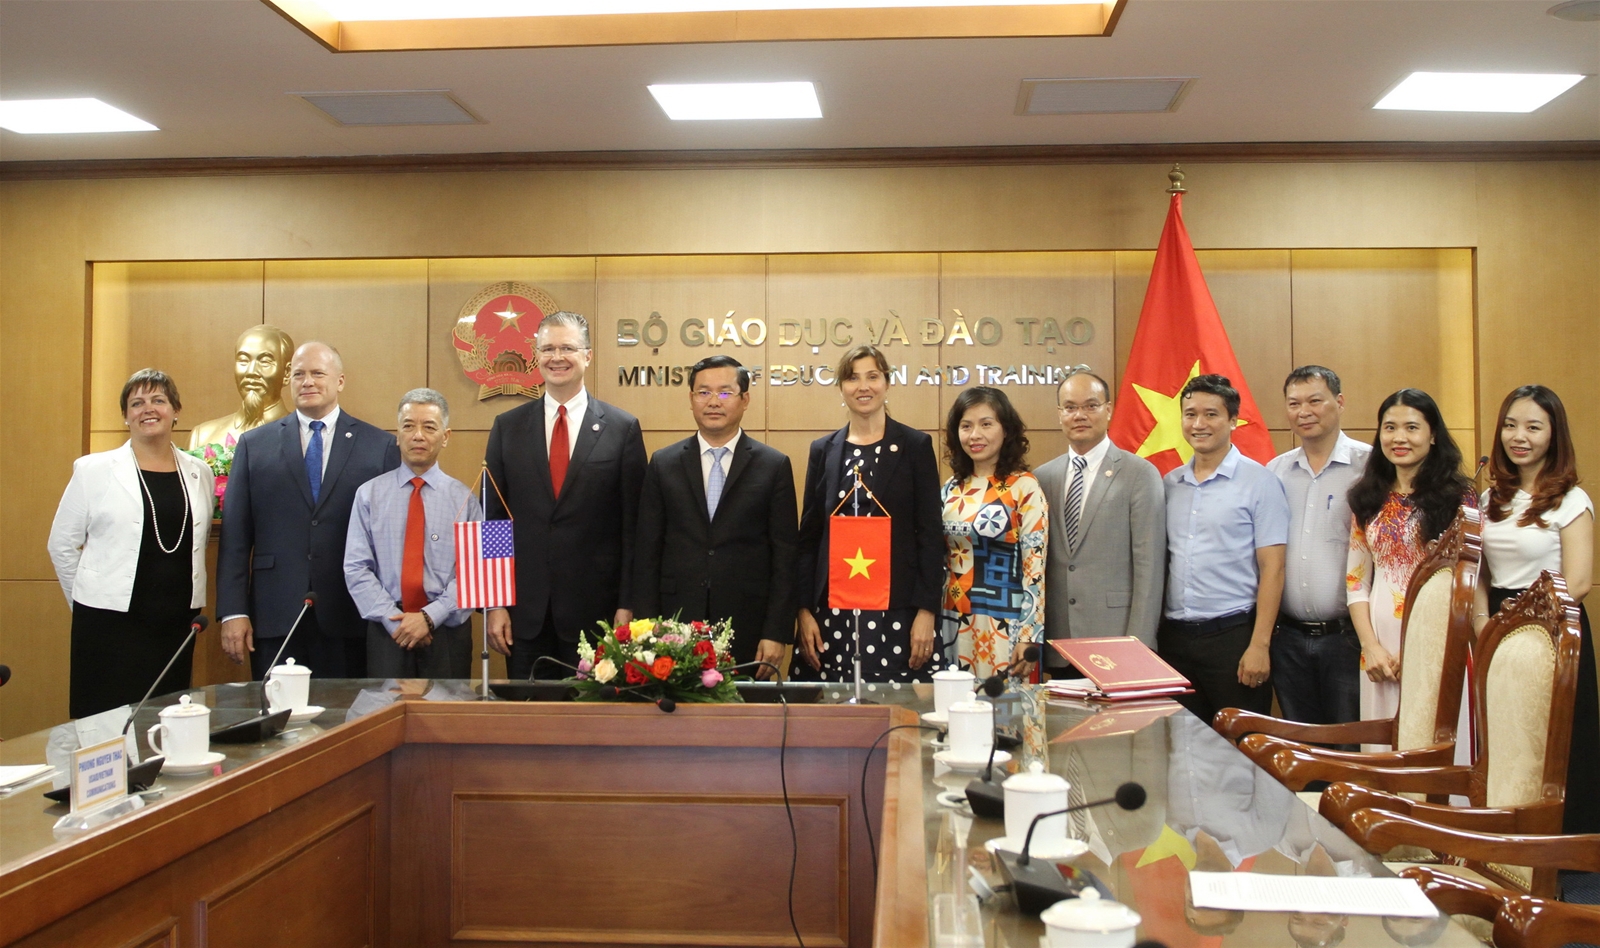 Hoa Kỳ hỗ trợ Việt Nam giảng dạy tiếng Anh trong các trường phổ thông - Ảnh minh hoạ 4